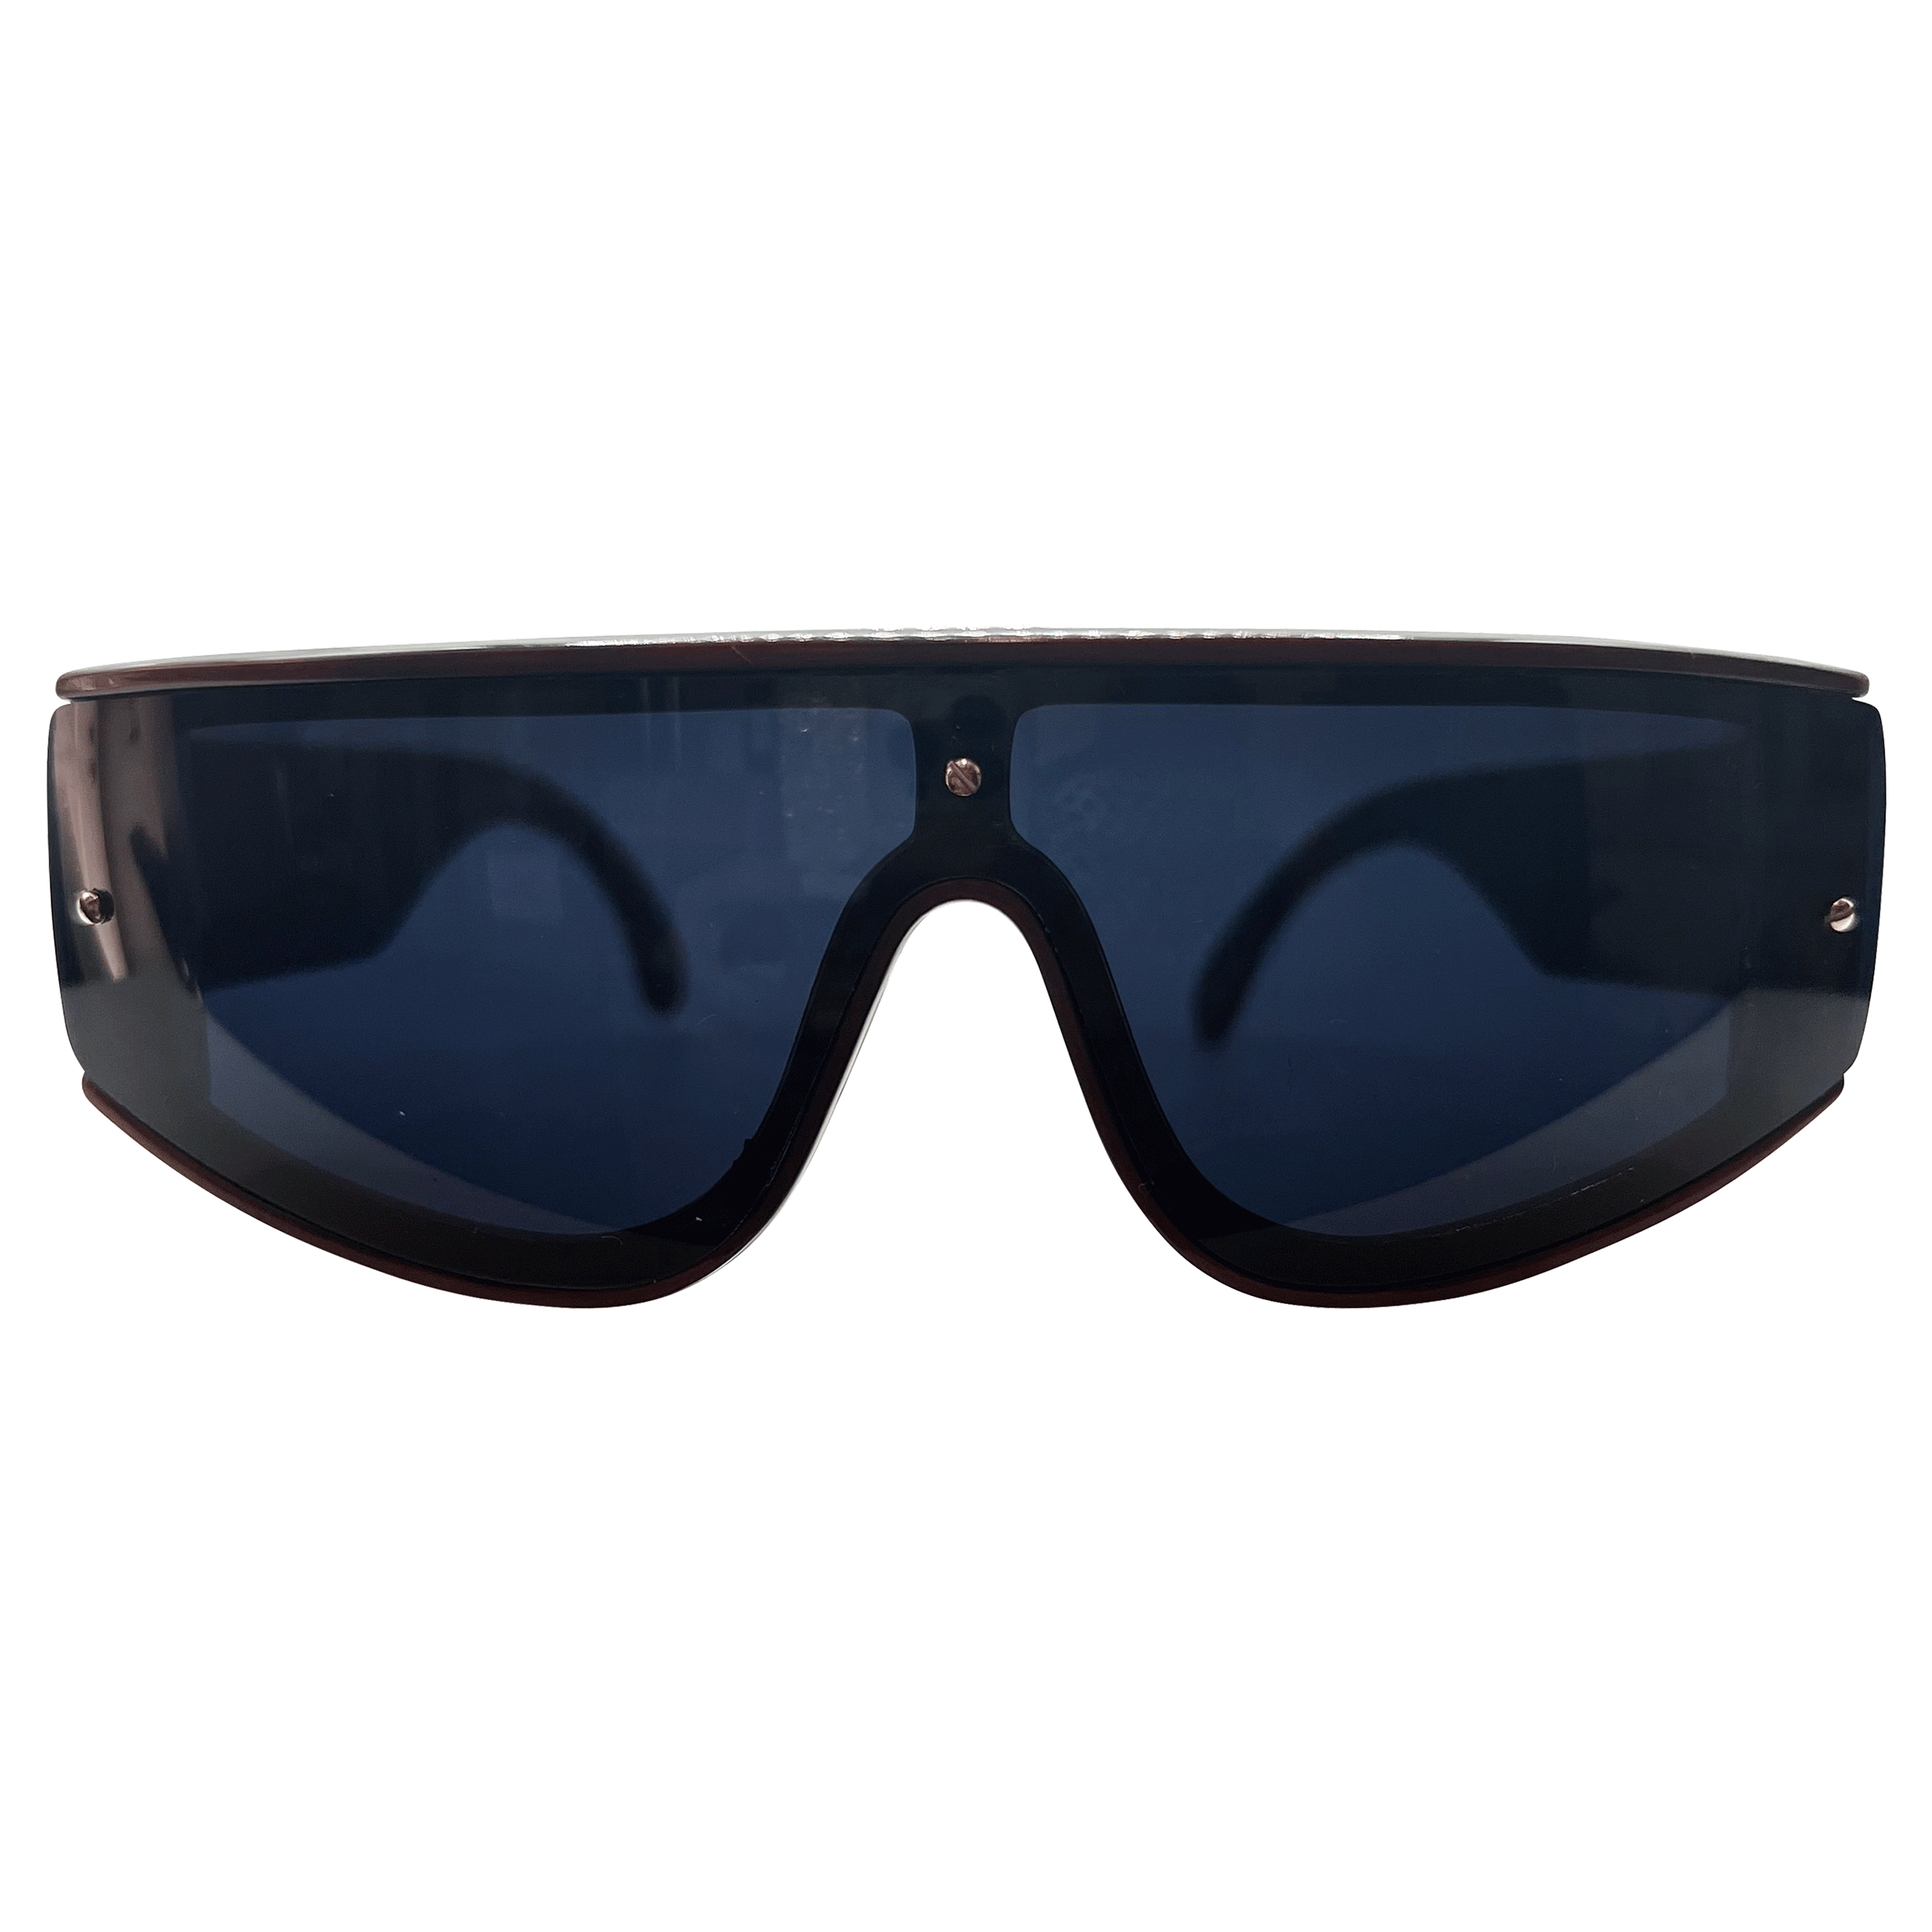 JUPITER Black/Maroon Shield Sunglasses